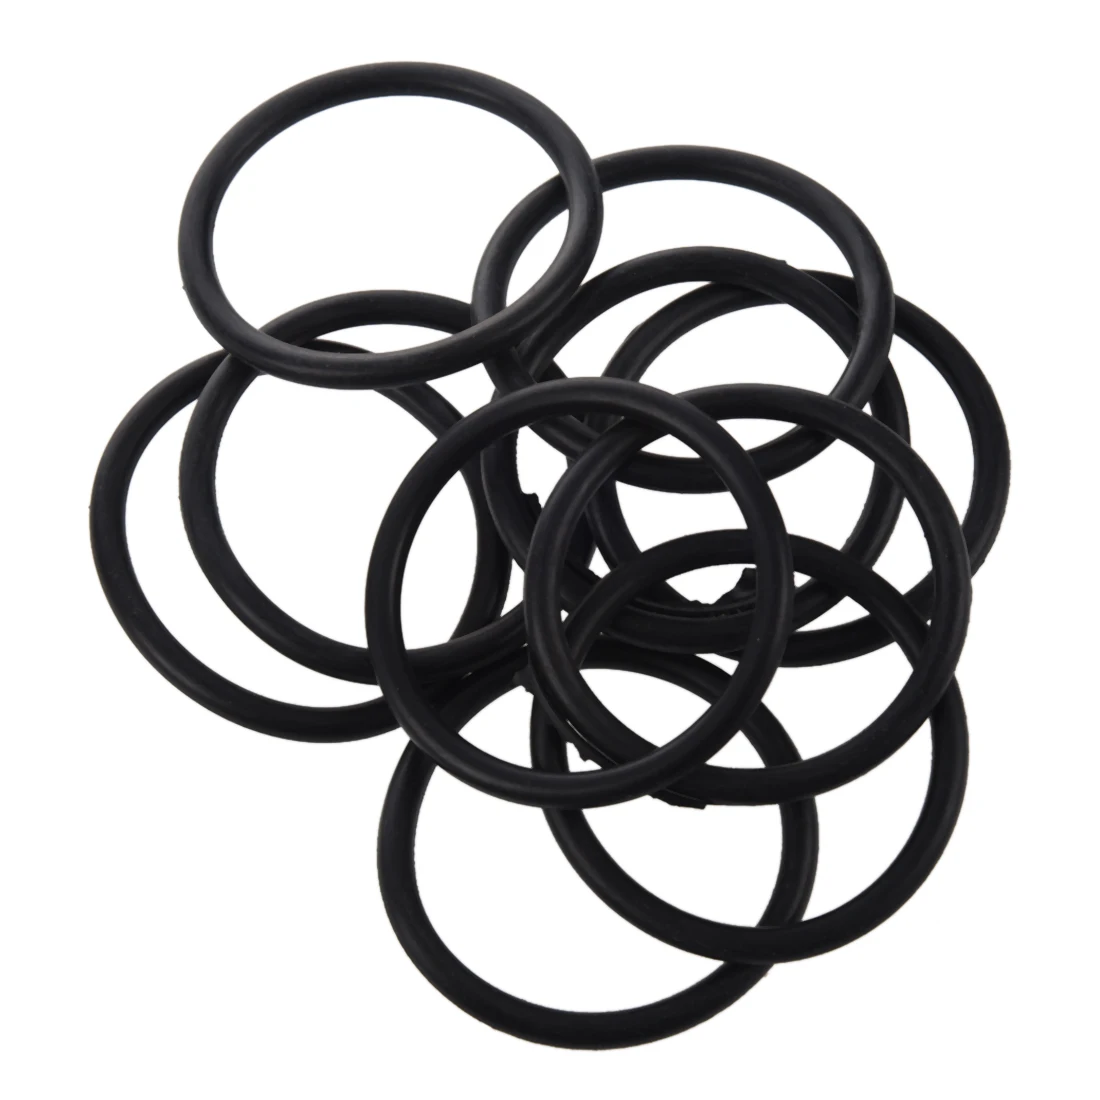 Ews-10 шт o-ring/уплотнительное кольцо из nbr (нитрильный каучук), 60x5 мм